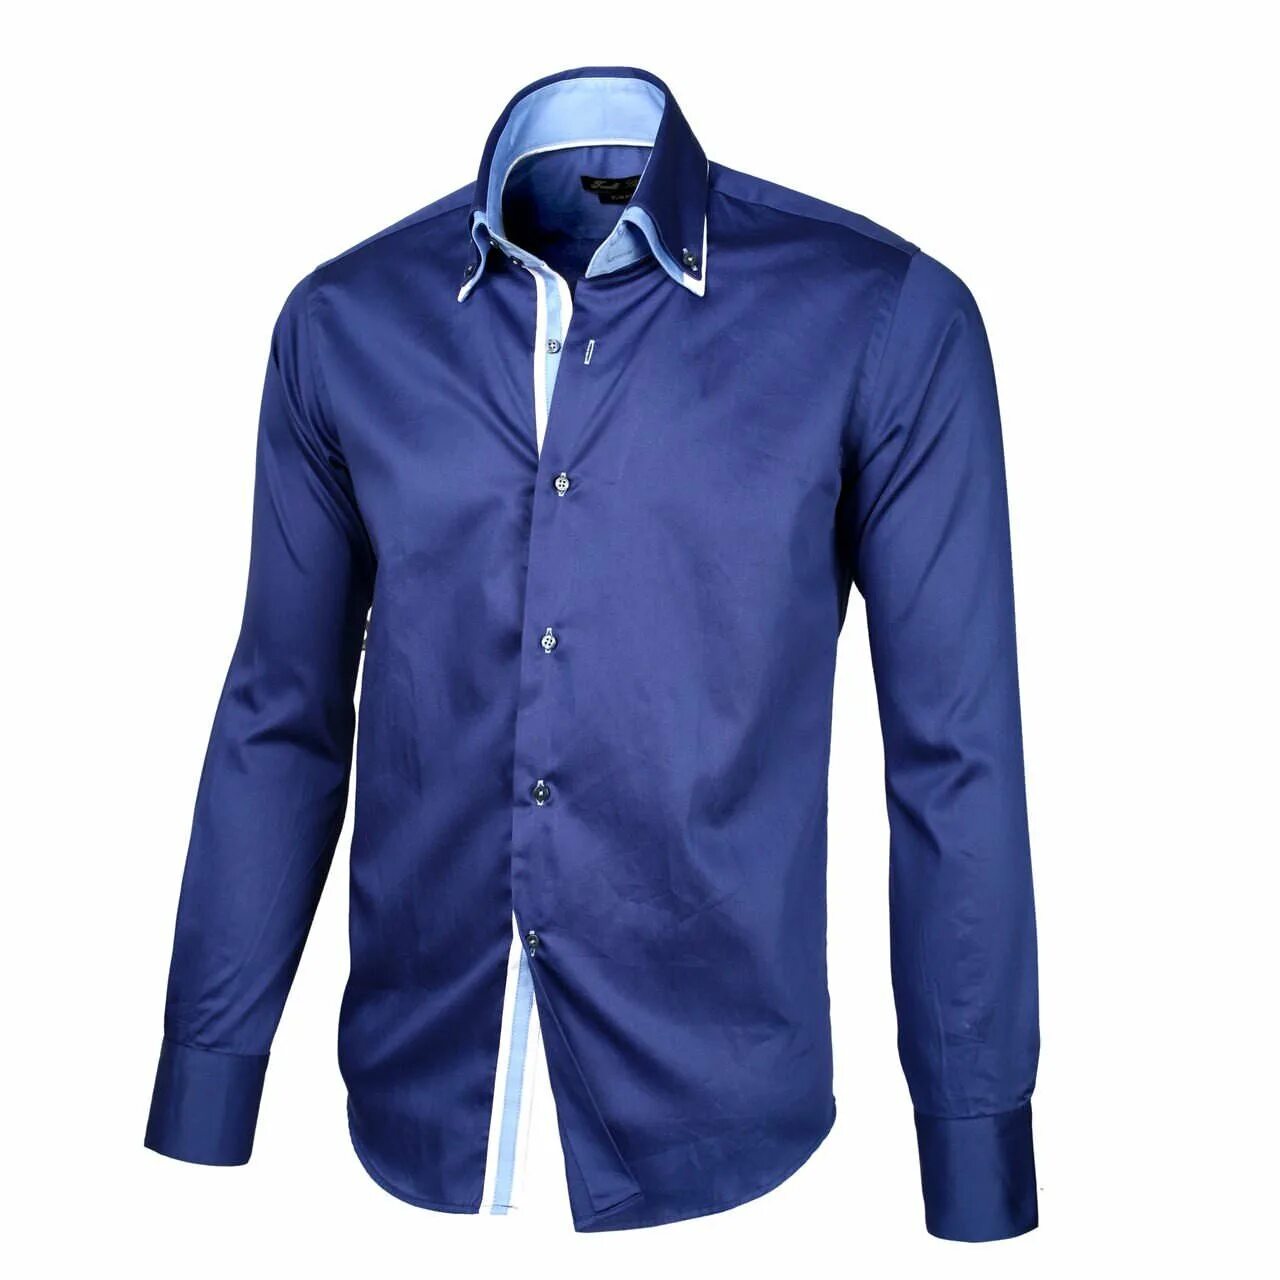 Рубашка мужская Mavi m021190-80692. Синяя рубашка. Синяя рубашка мужская. Красивые рубашки для мужчин. Рубашки мужские купить недорого москва